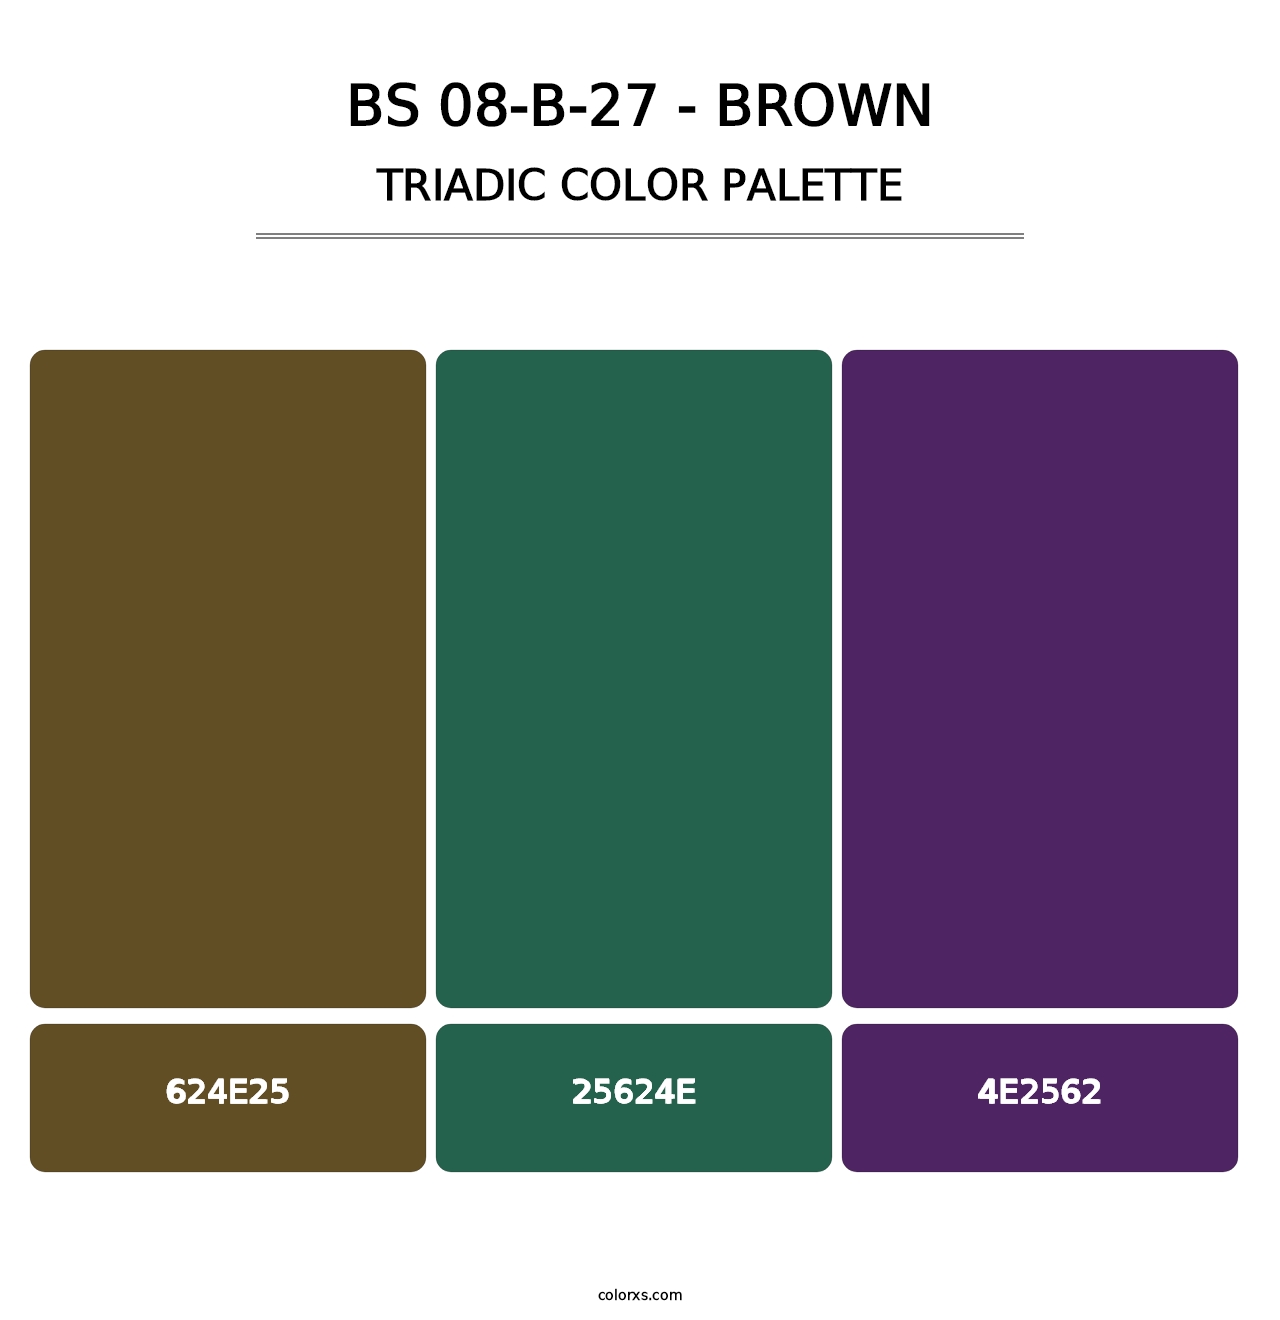 BS 08-B-27 - Brown - Triadic Color Palette